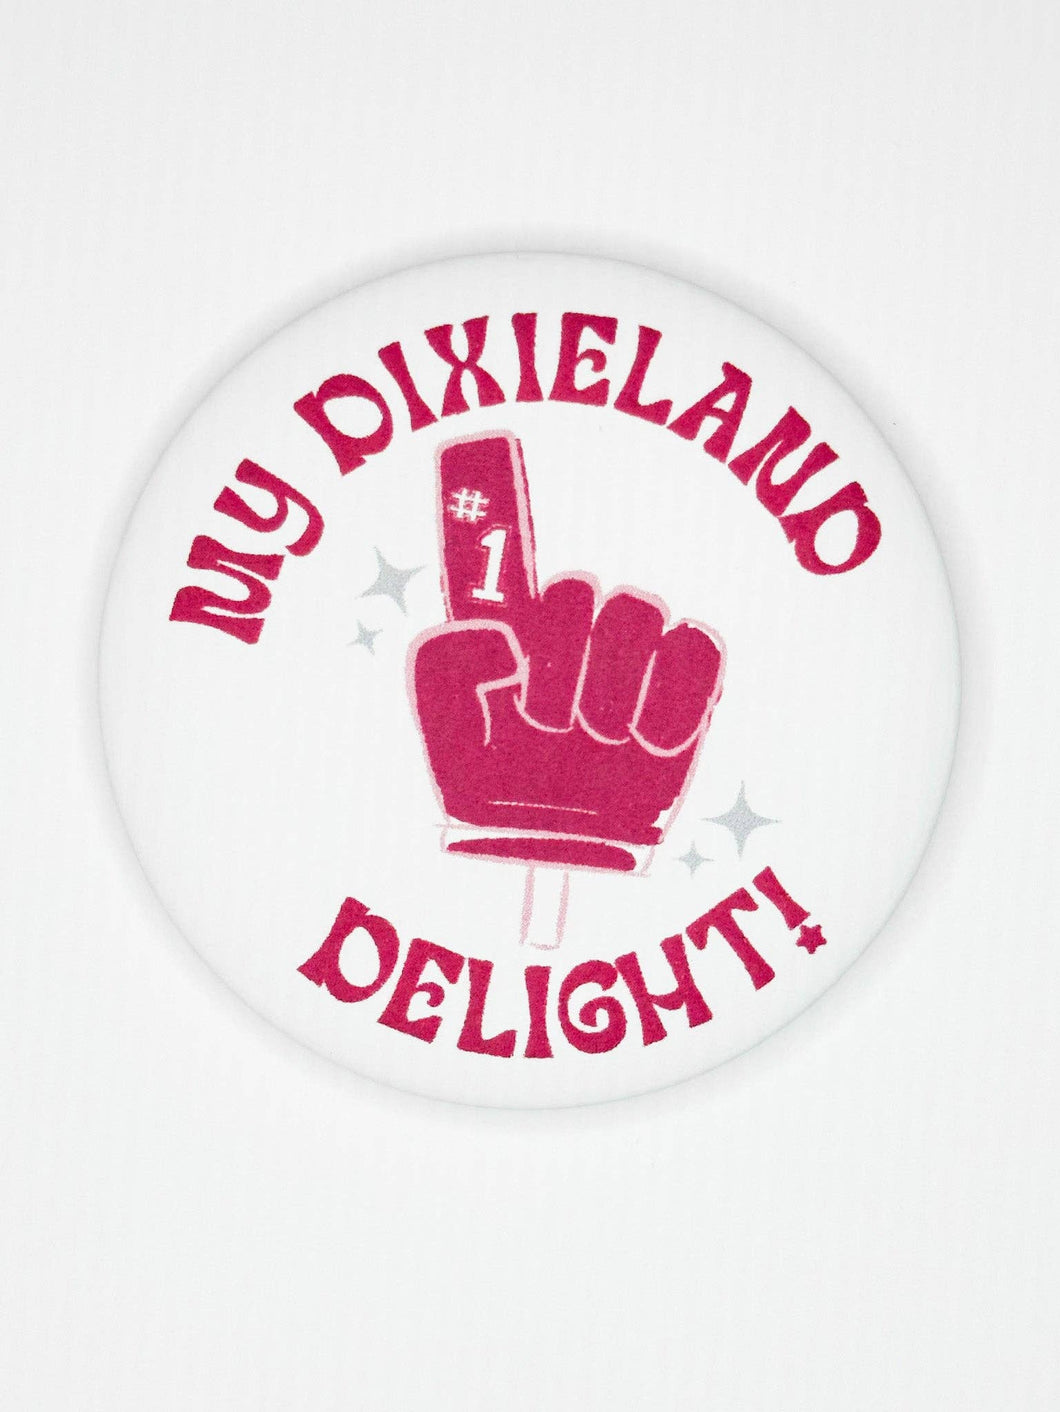 Dixieland Foam Finger Button